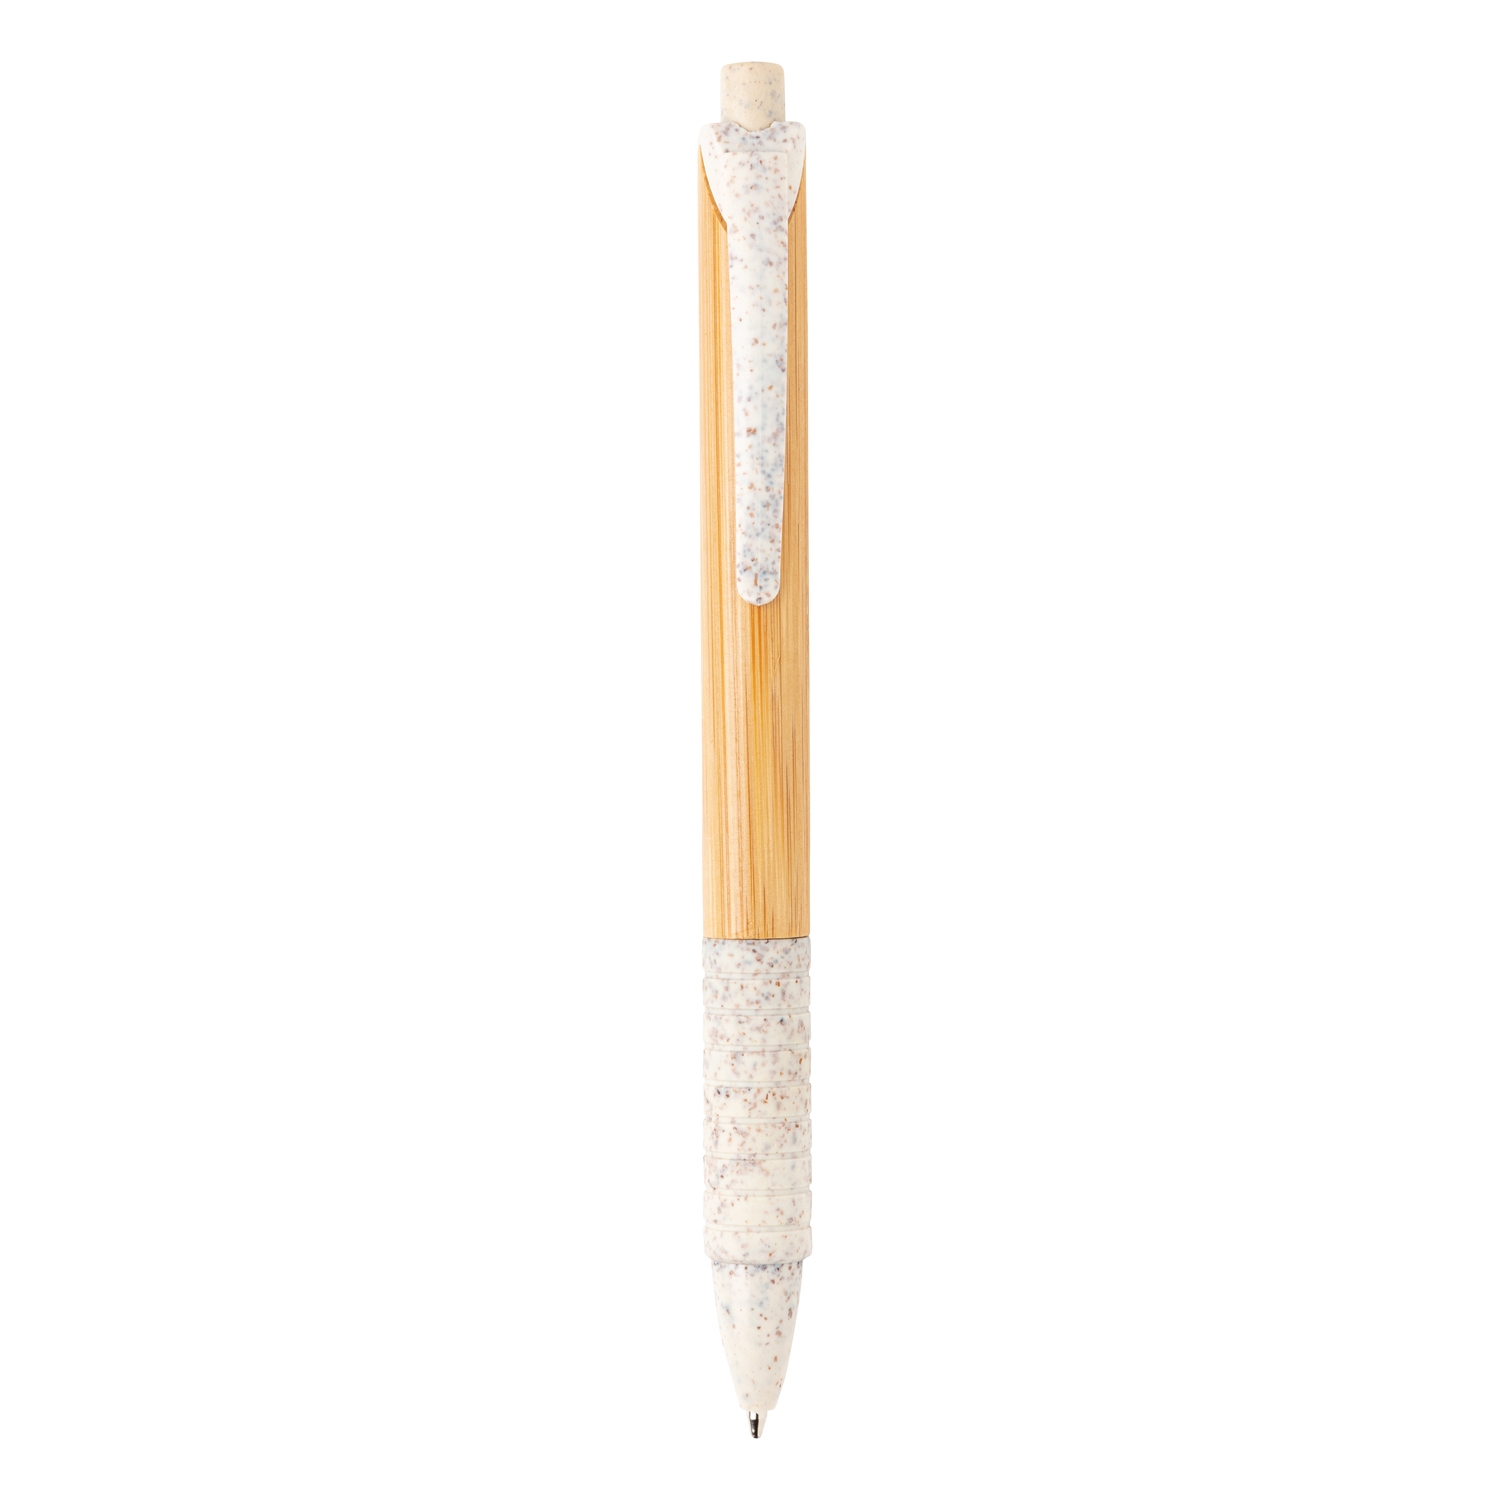 Ручка из бамбука и пшеничной соломы, белый, бамбук; волокно пшеничной соломы